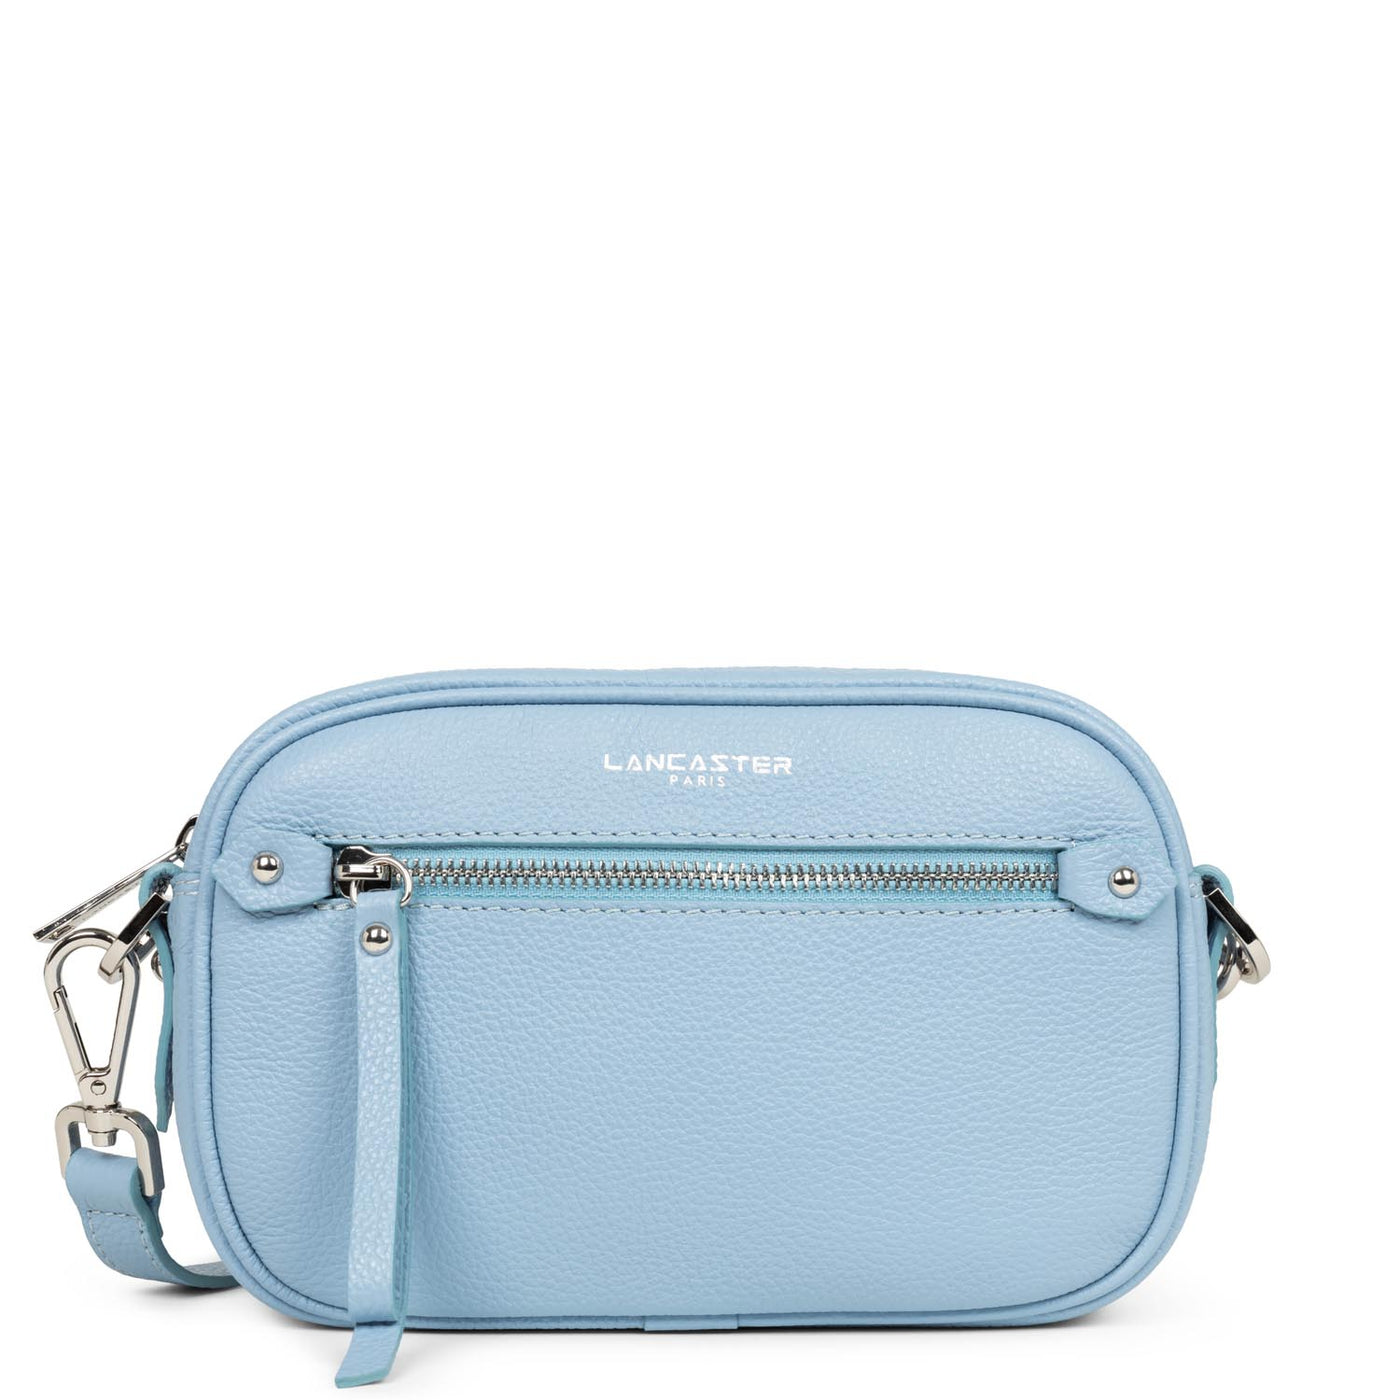 crossbody bag - firenze #couleur_bleu-ciel